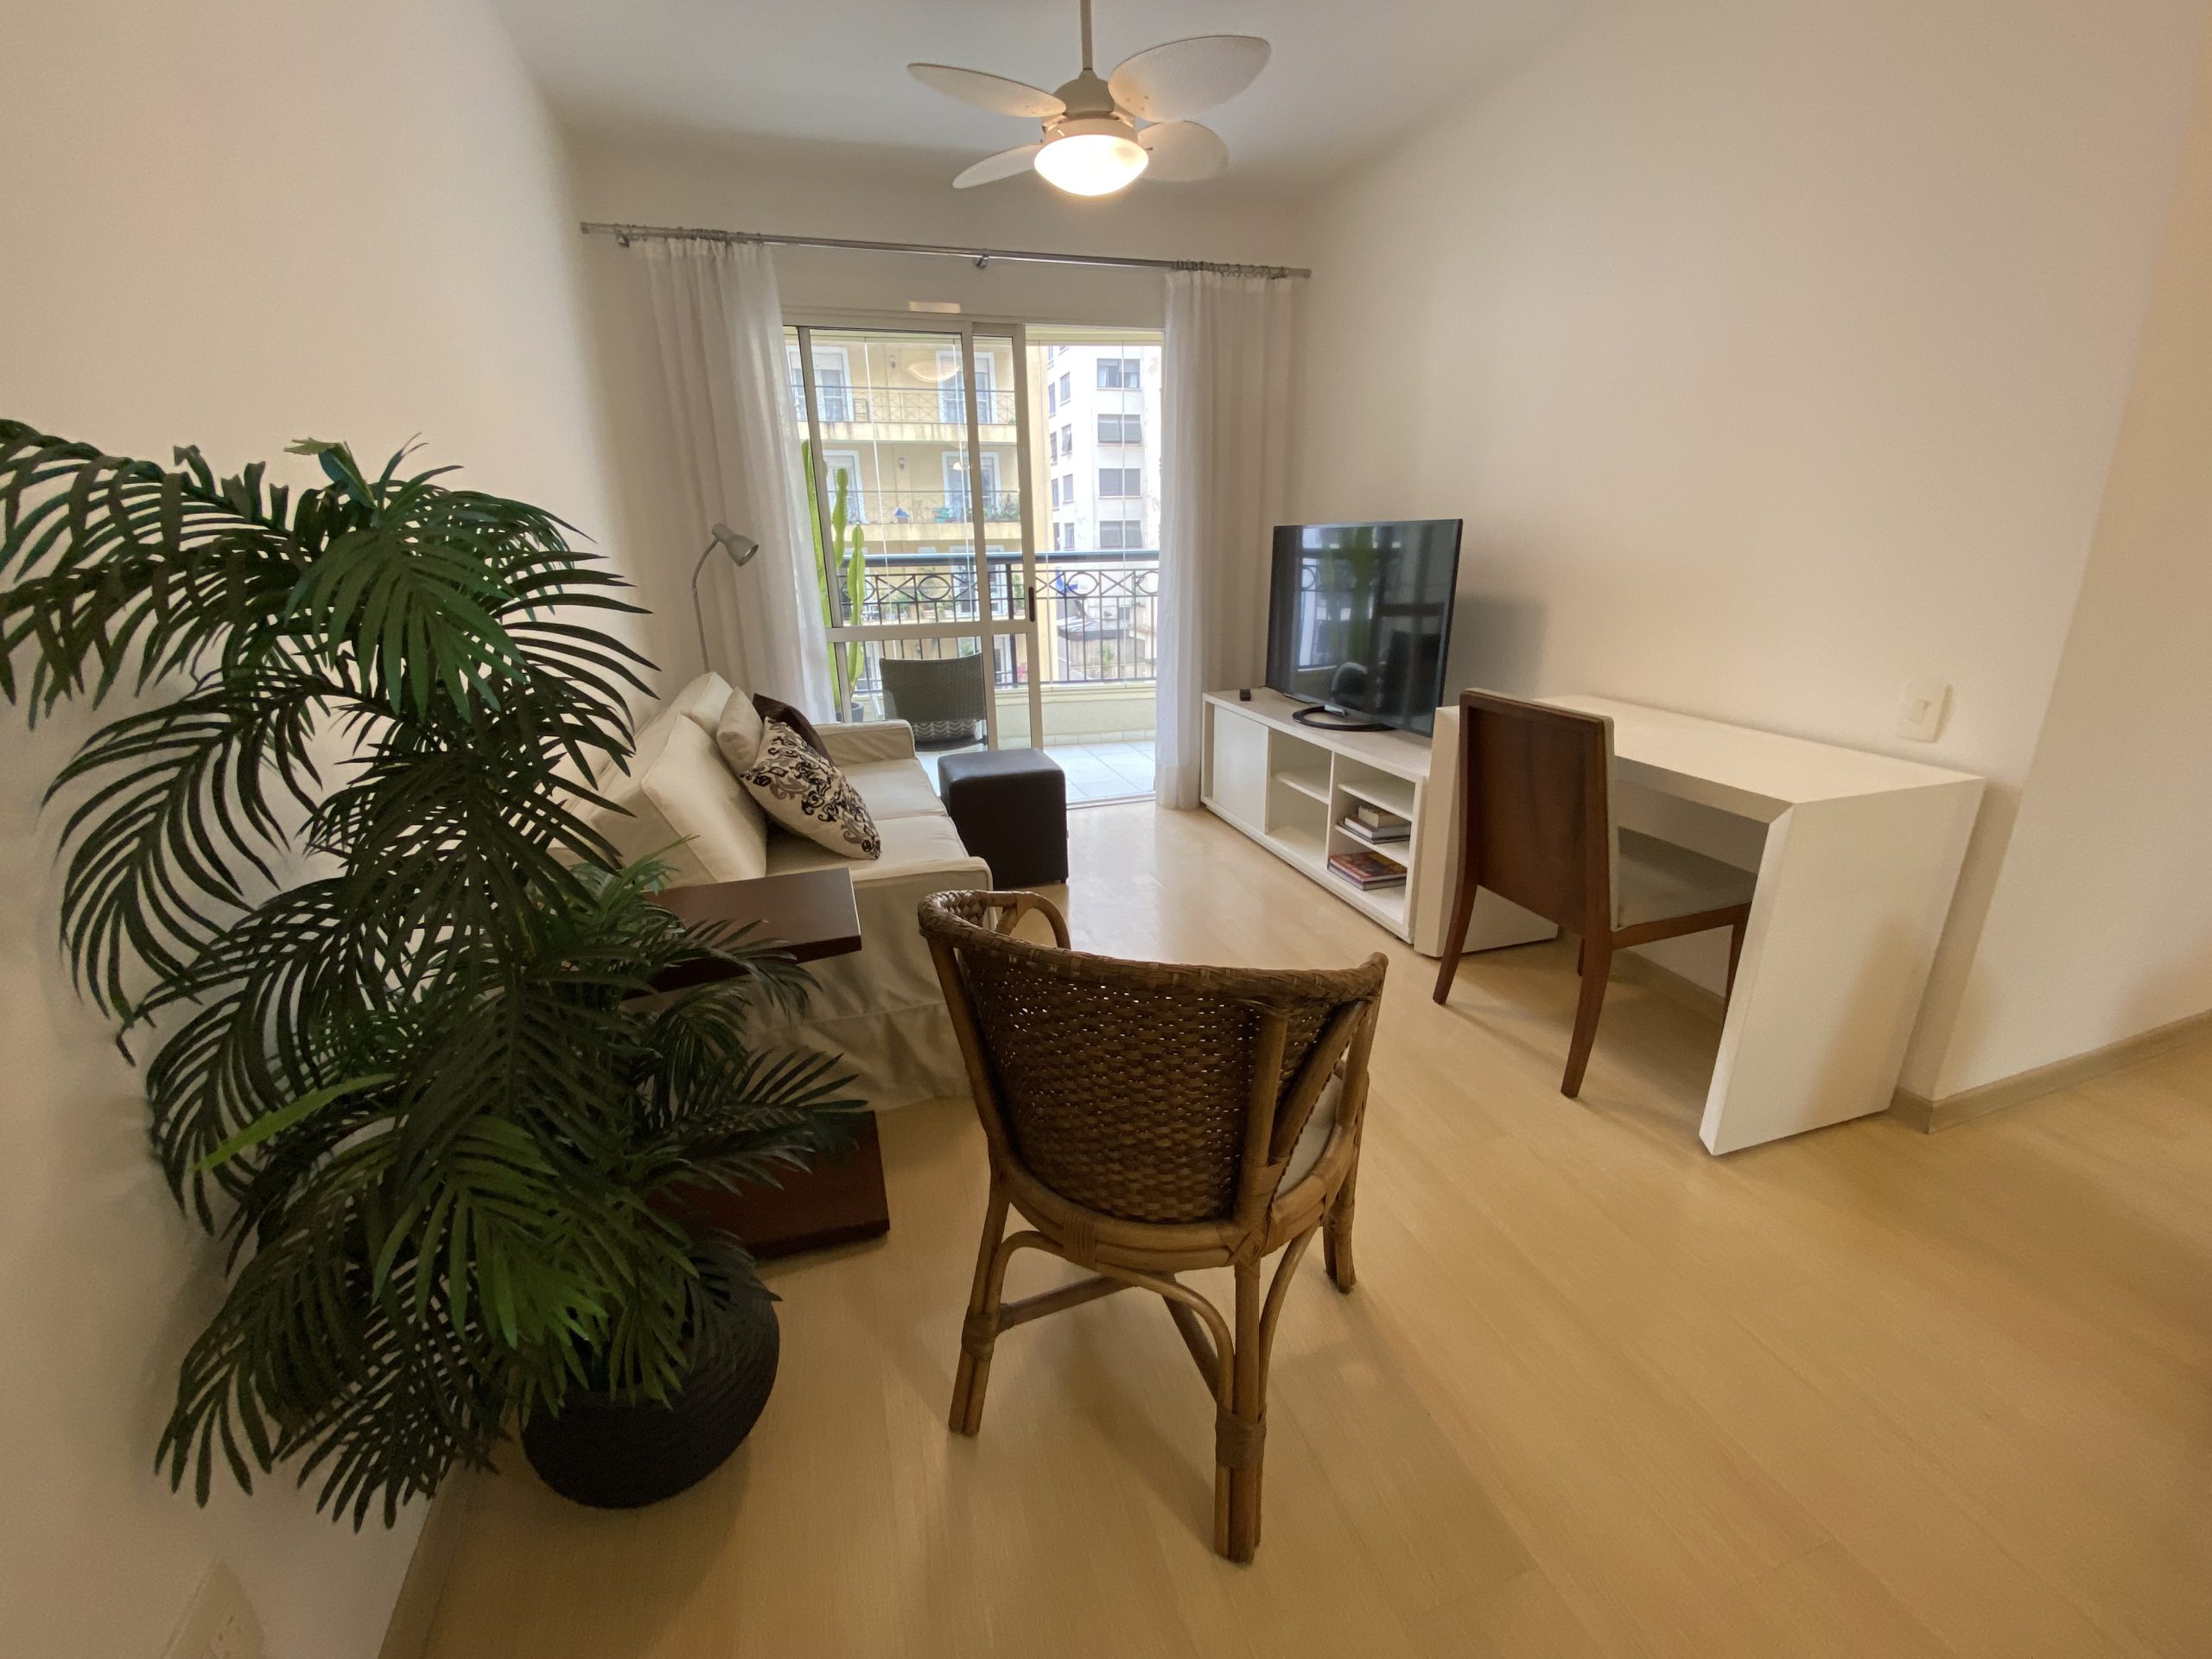 Apartamento a Venda nos Jardins – 2 Quartos (1 suíte) – Mobiliado, Prático e Confortável